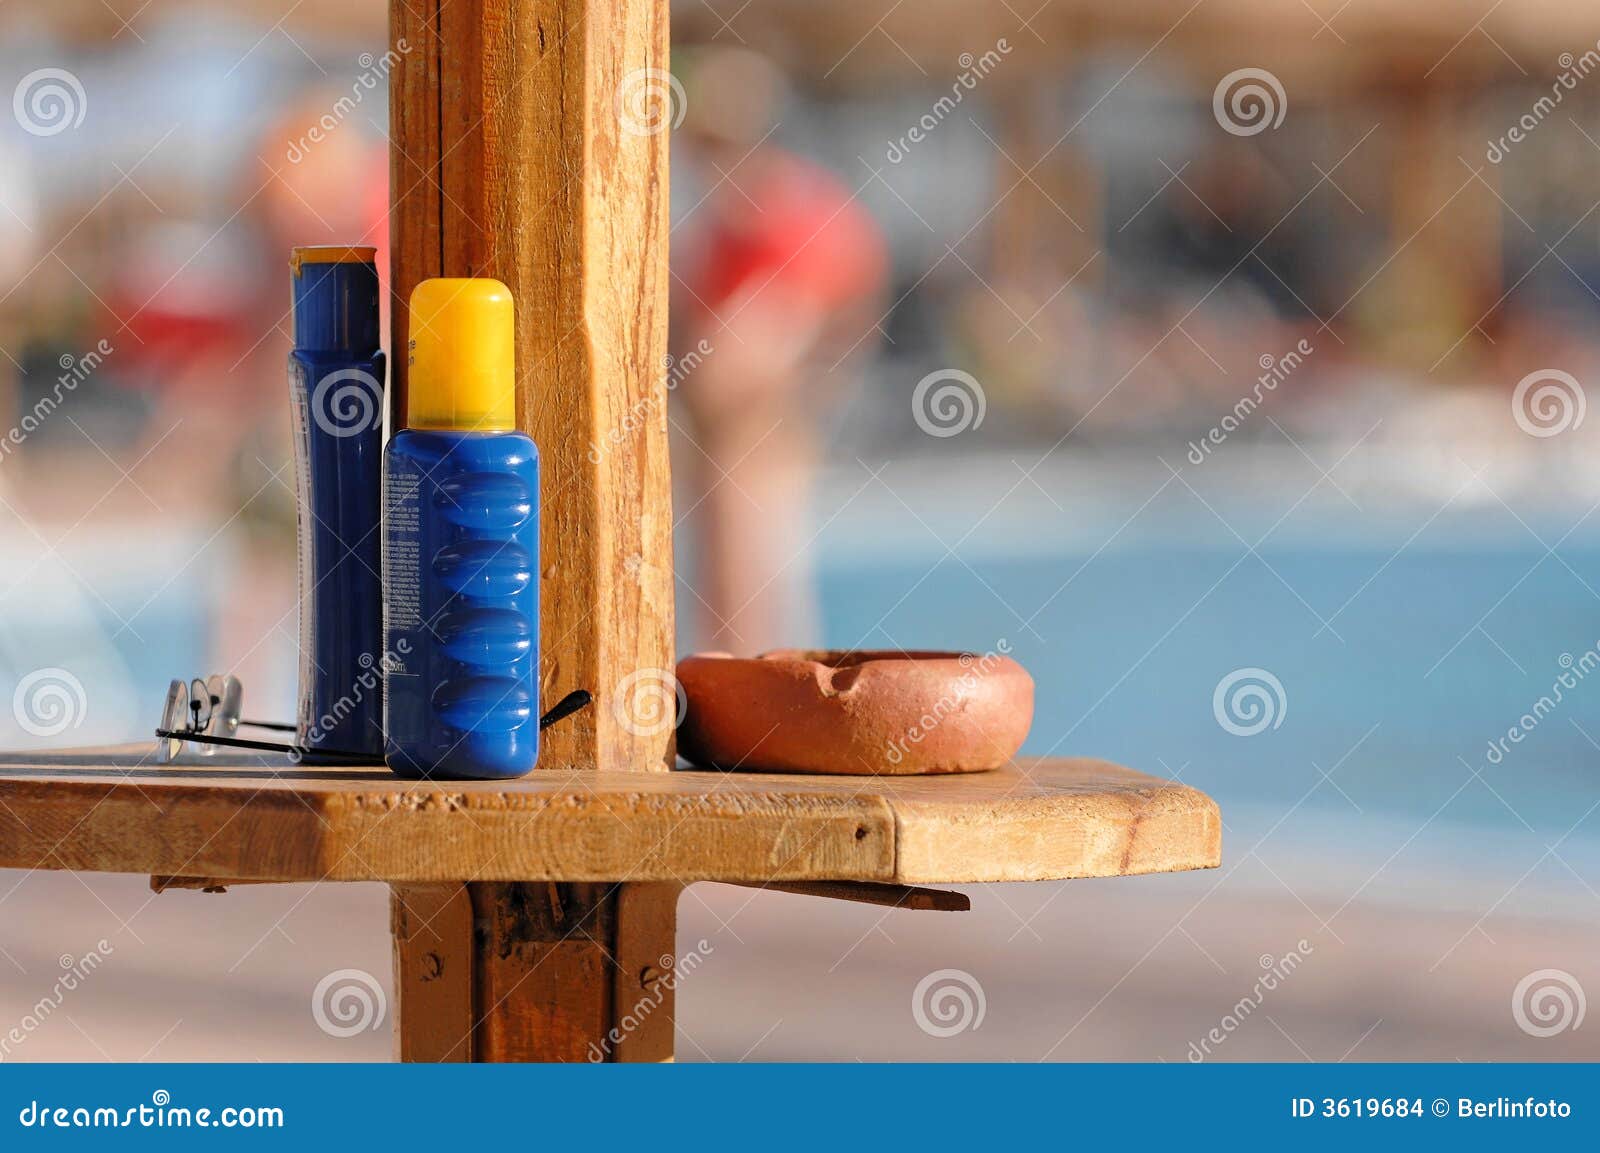 sunscreen and ashtray at pool